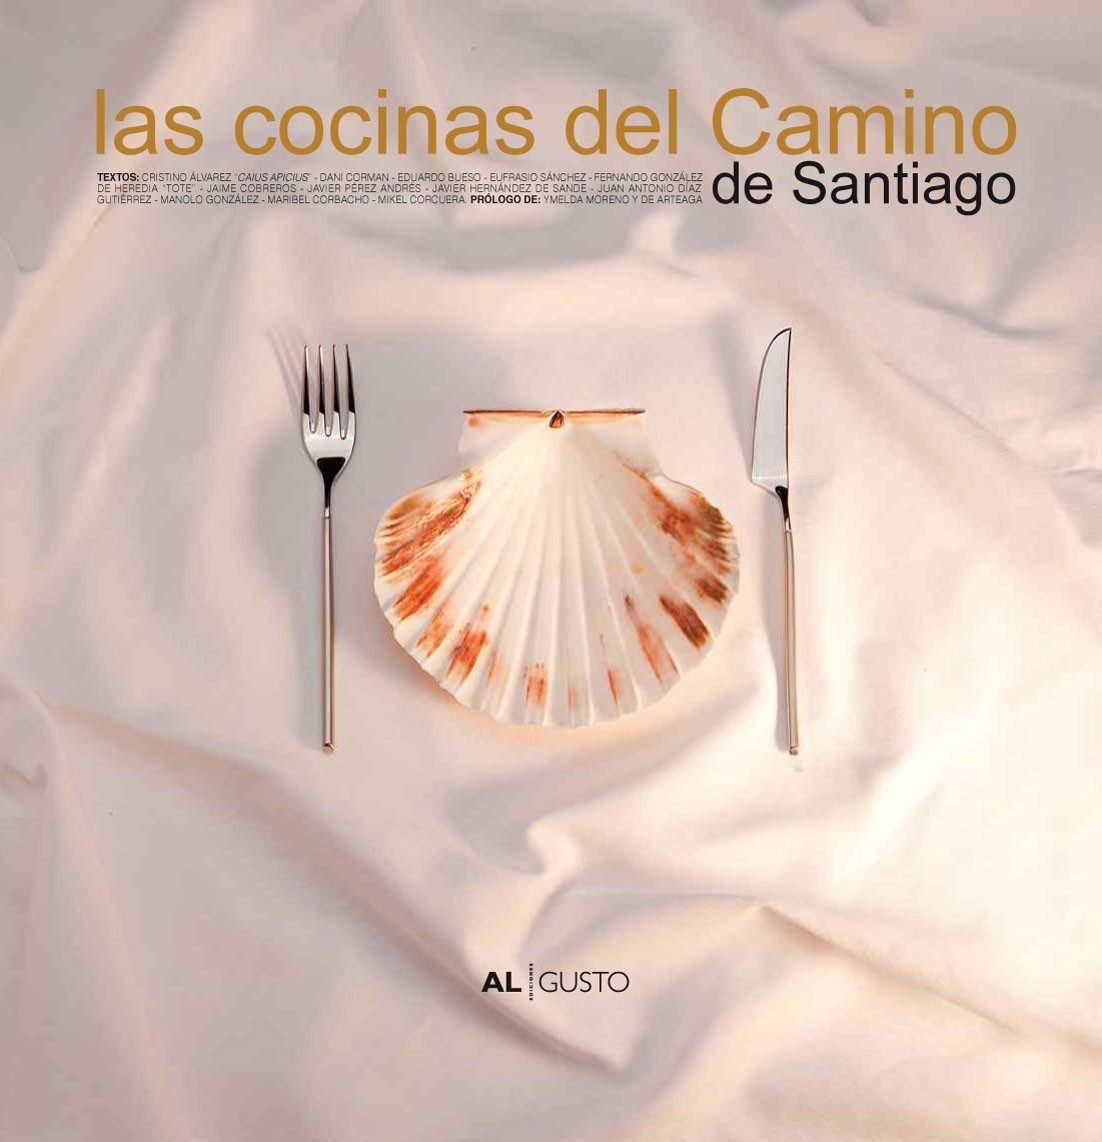 Las cocinas del Camino de Santiago, un libro sobre la gastronomía en el Camino